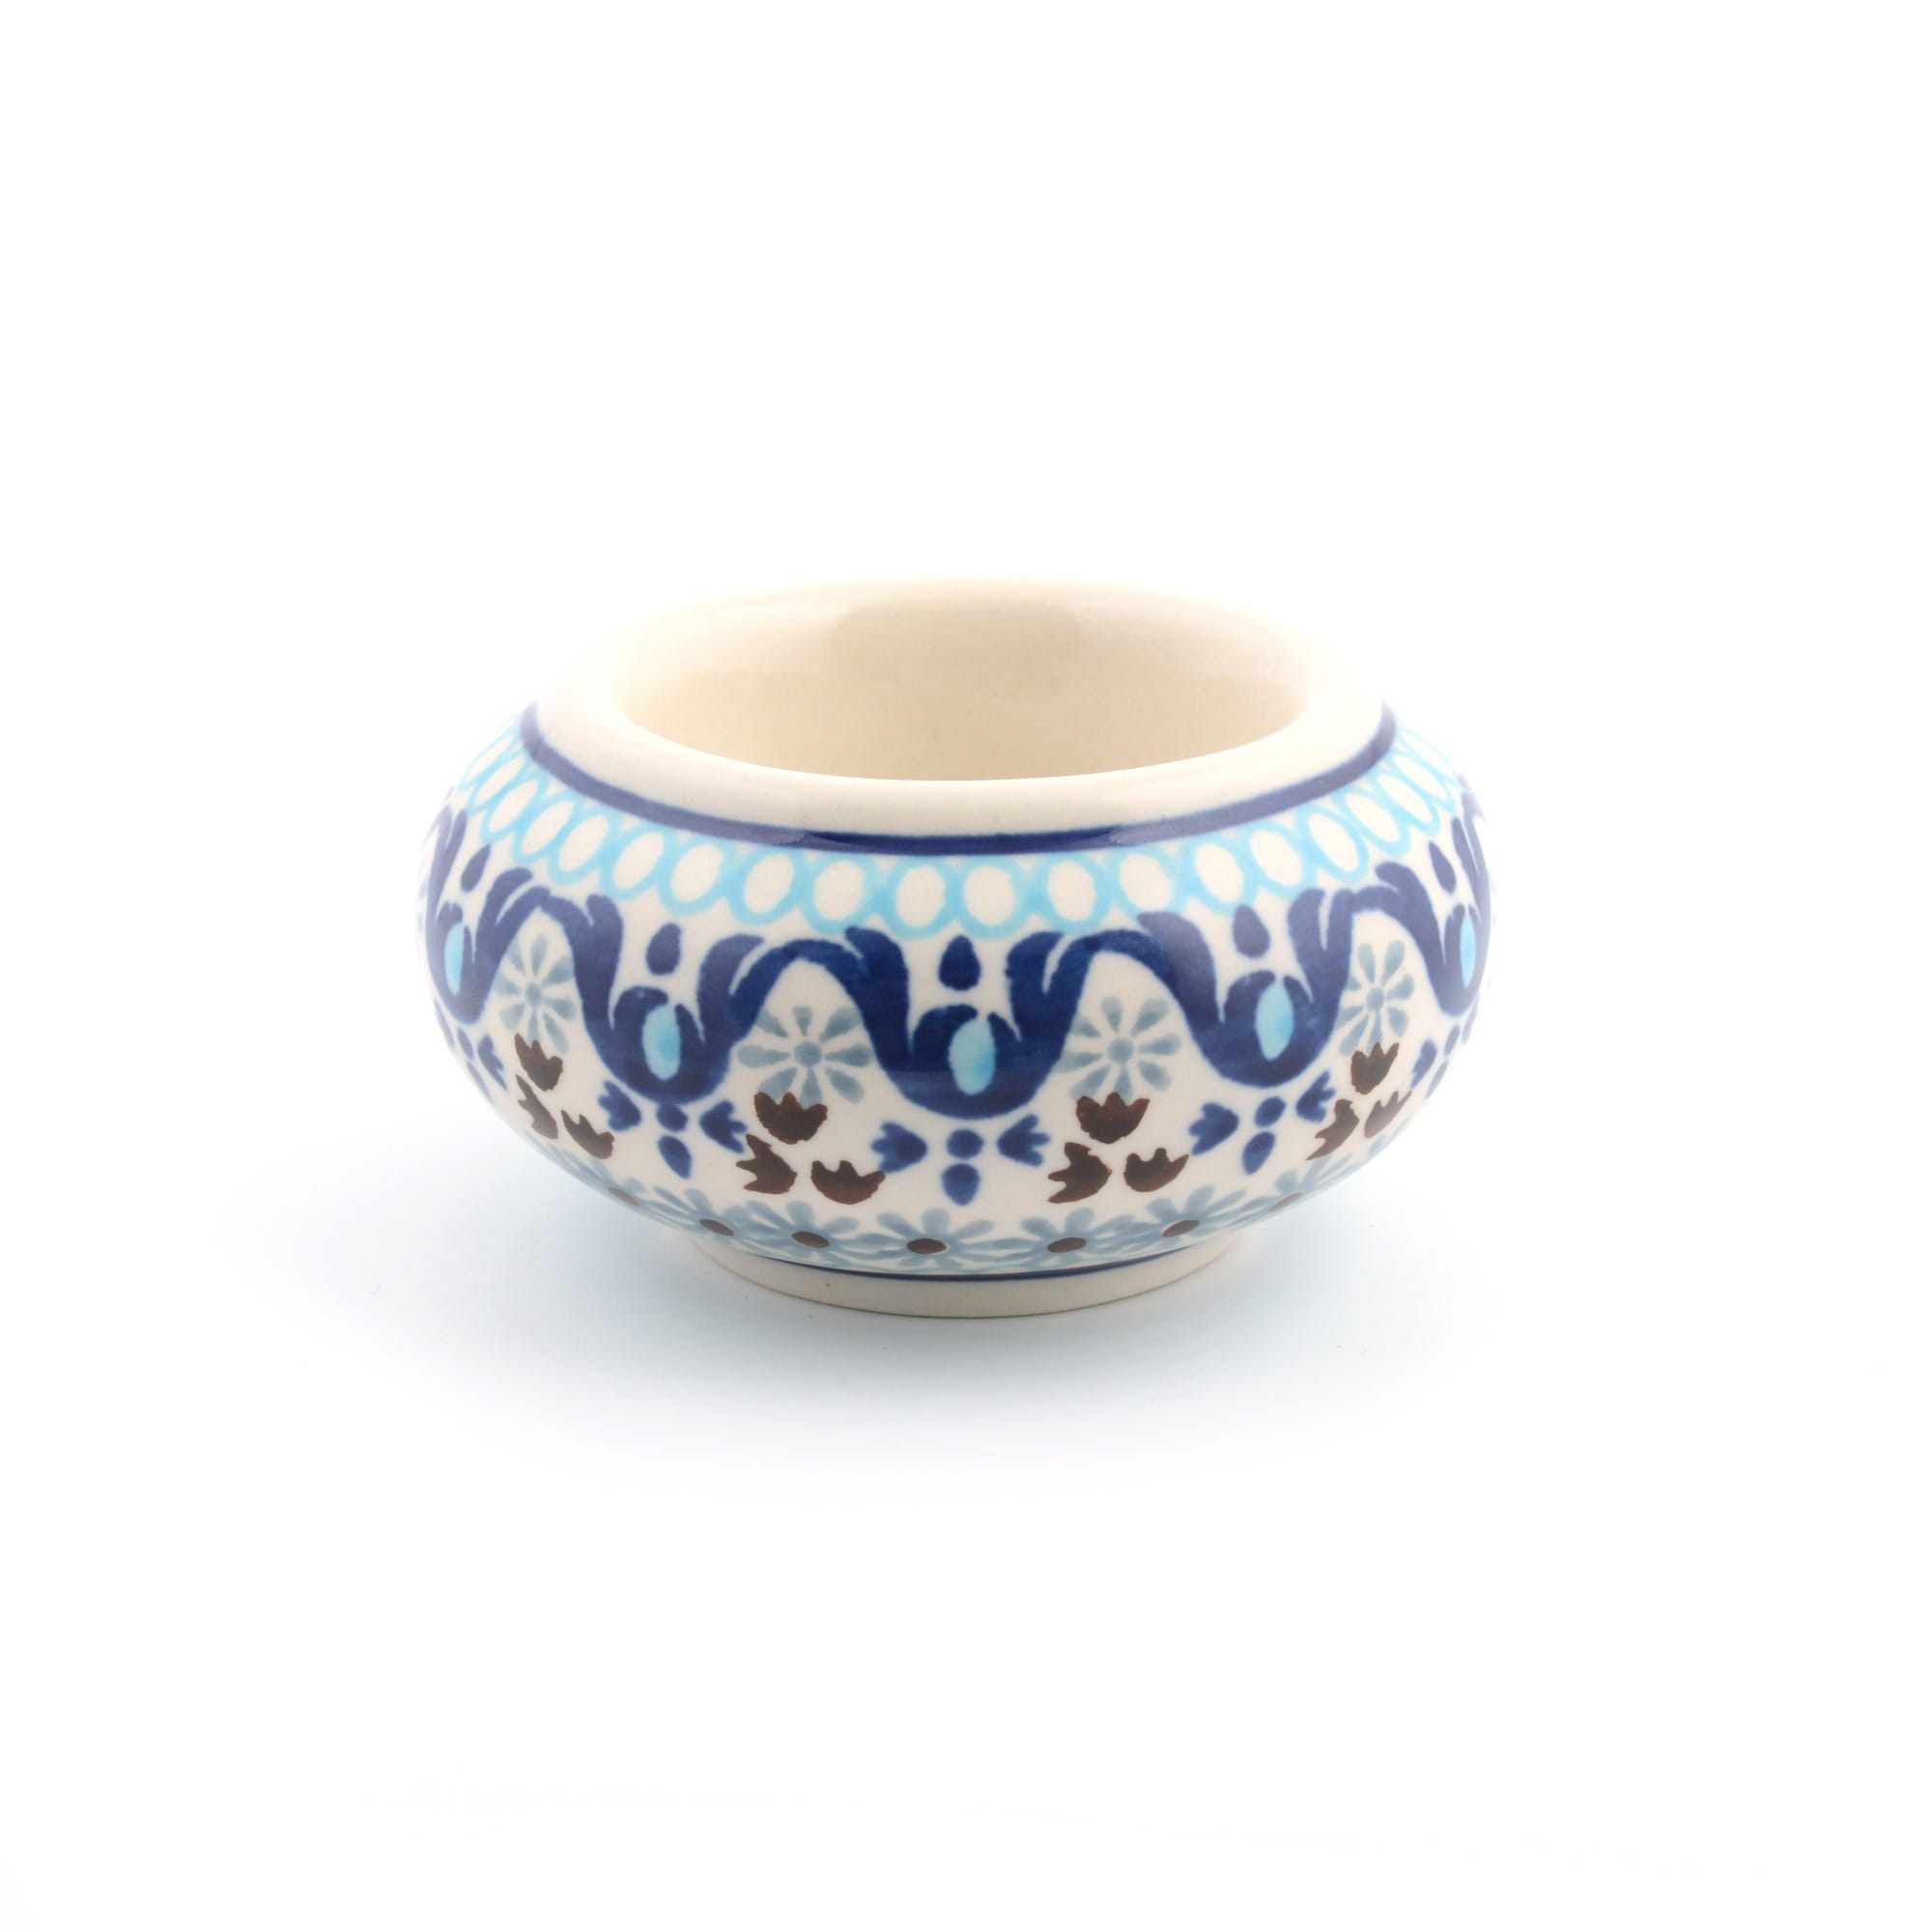 Bunzlau Castle Keramik Teelichthalter - Marrakesh